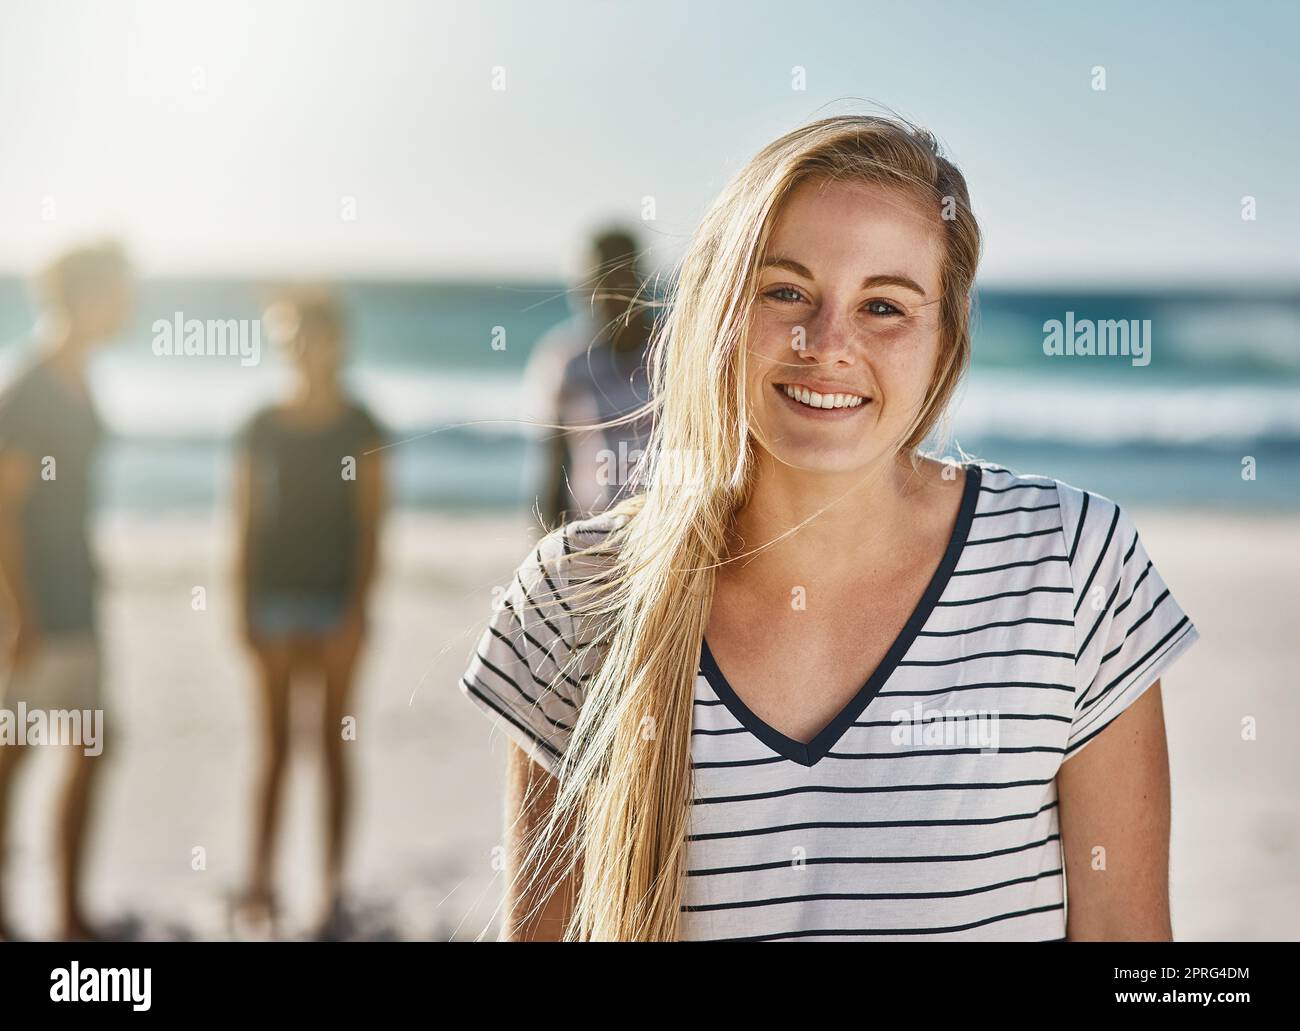 Non dico mai di no ad una giornata in spiaggia. Ritratto di una giovane donna felice che si posa sulla spiaggia con i suoi amici sullo sfondo. Foto Stock